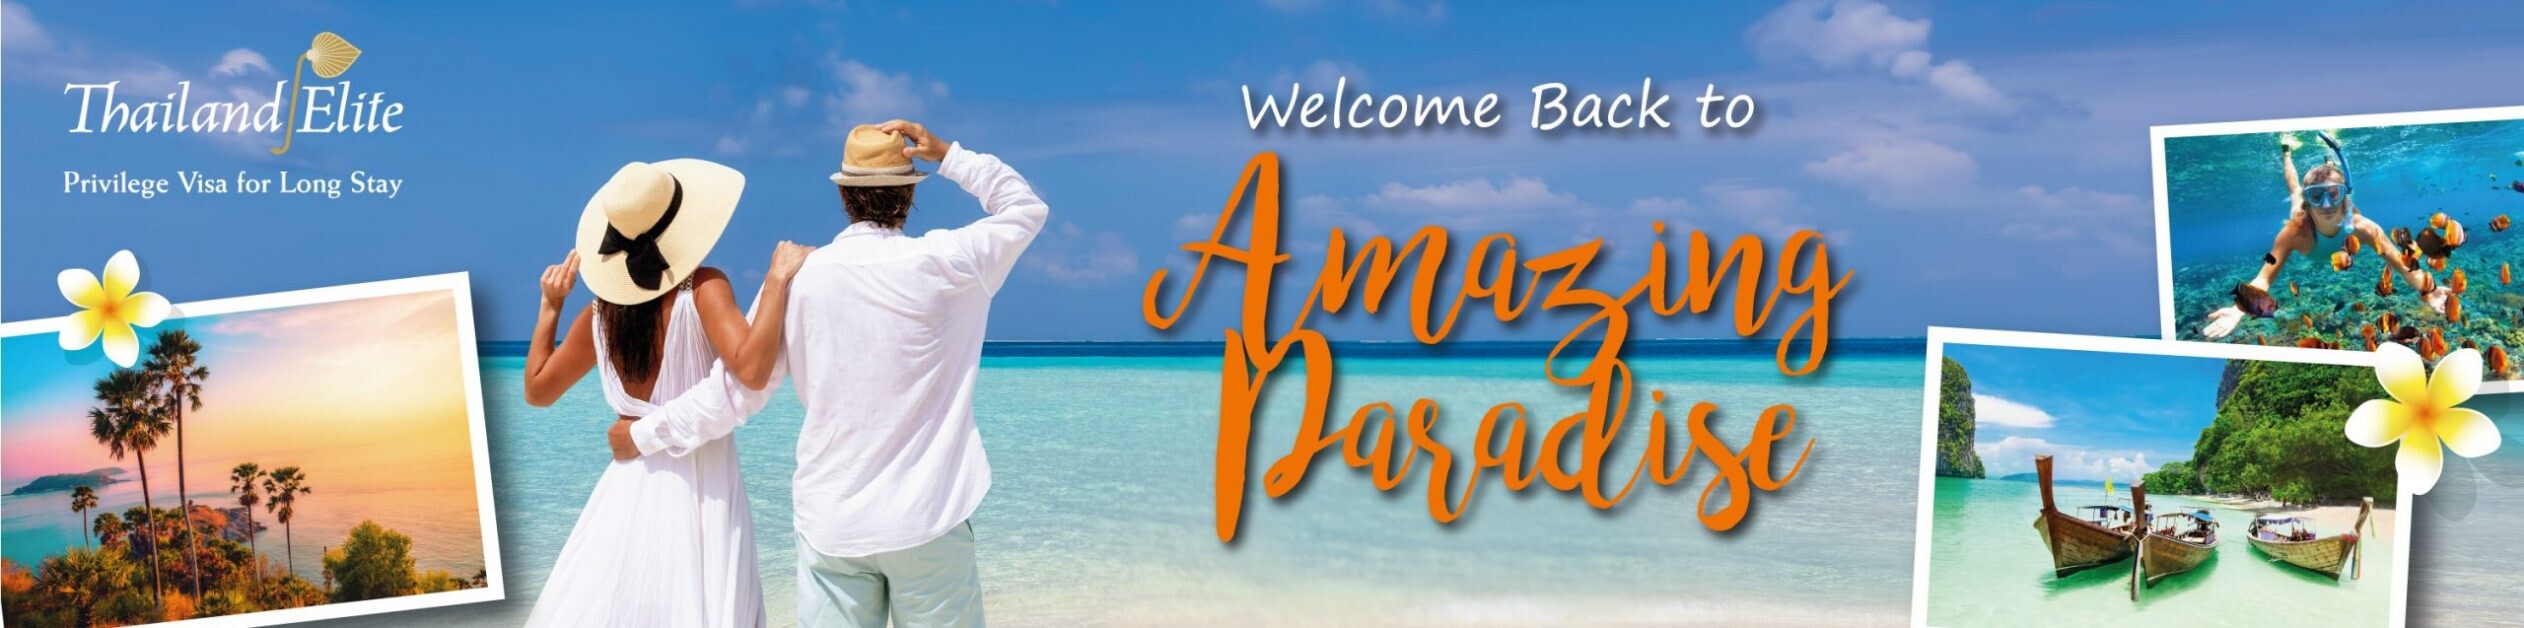 ไทยแลนด์ พริวิเลจ คาร์ด เปิดตัวโครงการ "Welcome Back to Amazing Paradise"  คาดหวังสมาชิกบัตรฯ จากต่างประเทศร่วมเดินทางเข้าไทย กระตุ้นส่งเสริมการท่องเที่ยว